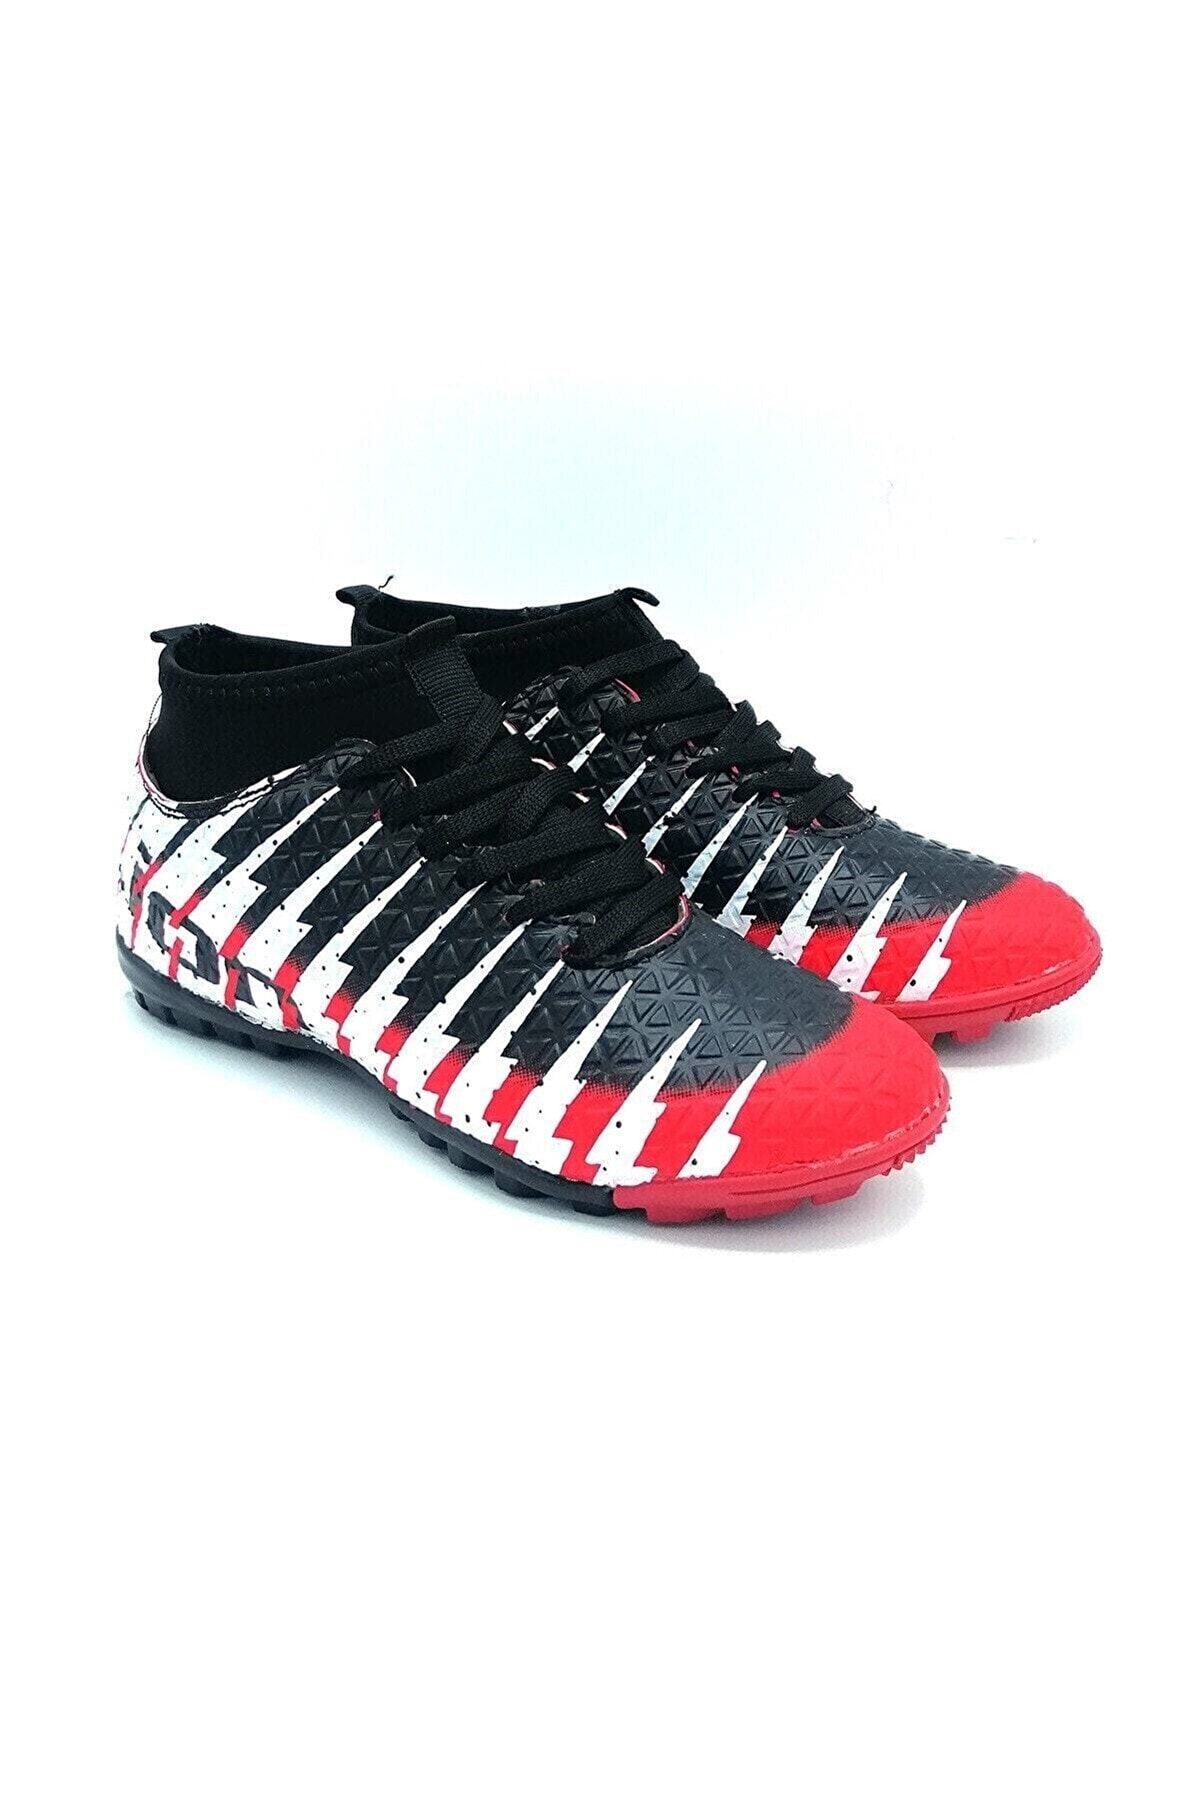 Lion Futbol Ayakkabısı Çoraplı Halısaha Siyah Kırmızı F90-25